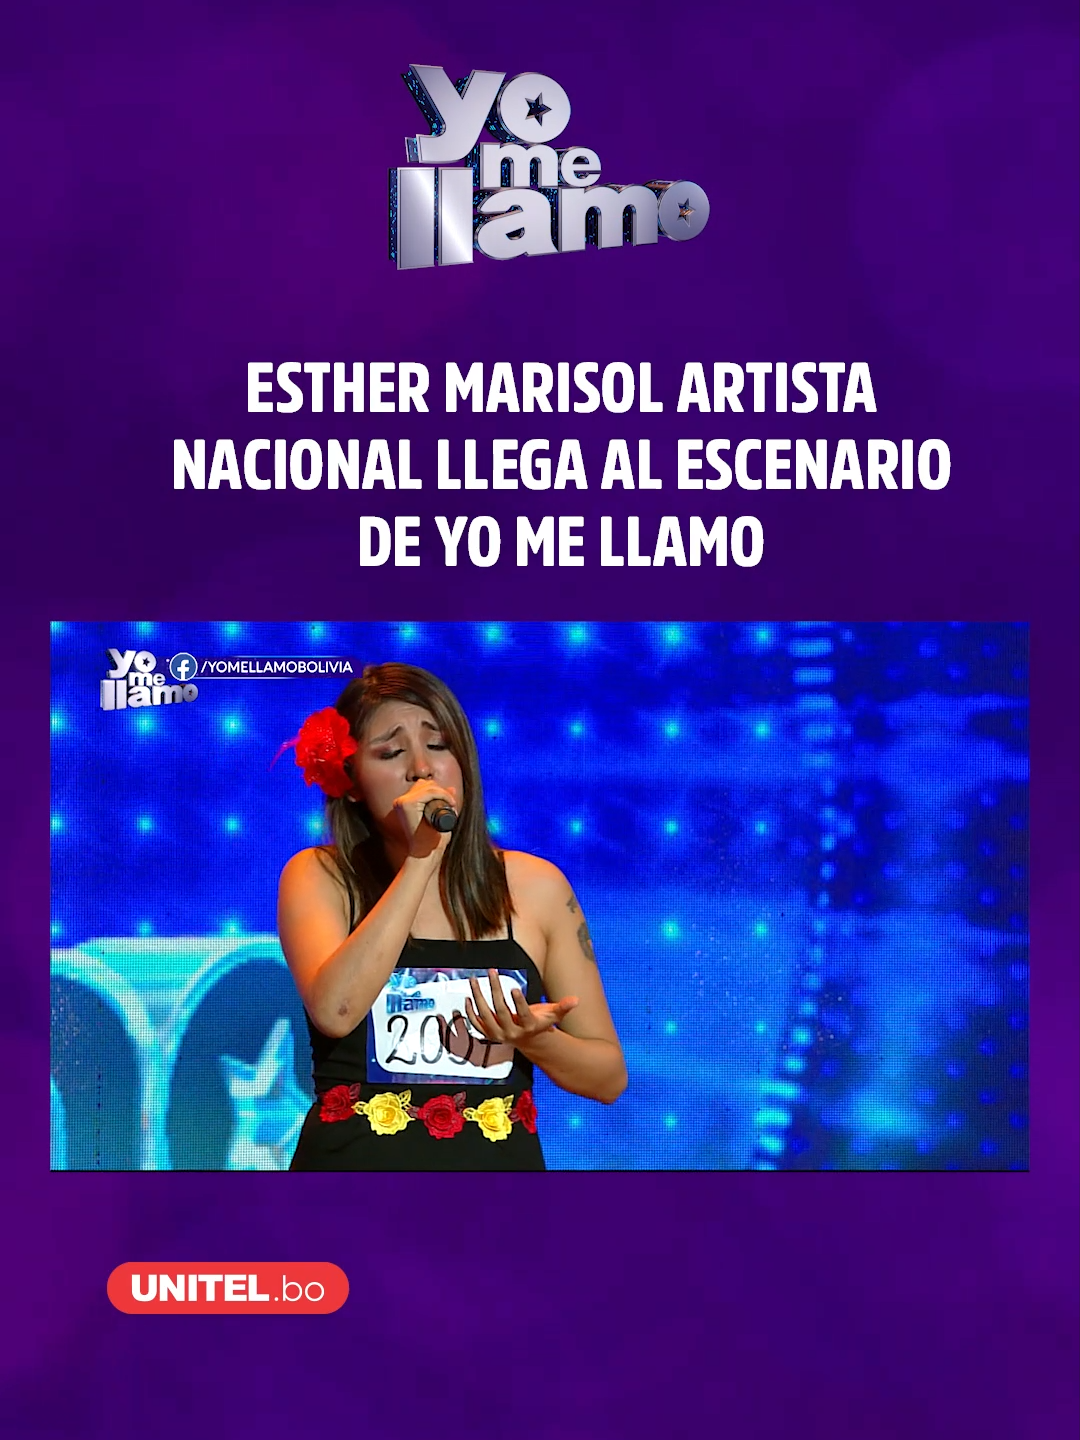 Esther Marisol artista nacional llega a demostrar su potencial al escenario de los sueños de Yo Me Llamo Bolivia 🎶🎙😍 #Unitel #ymllbo #ymll #EstherMarisol